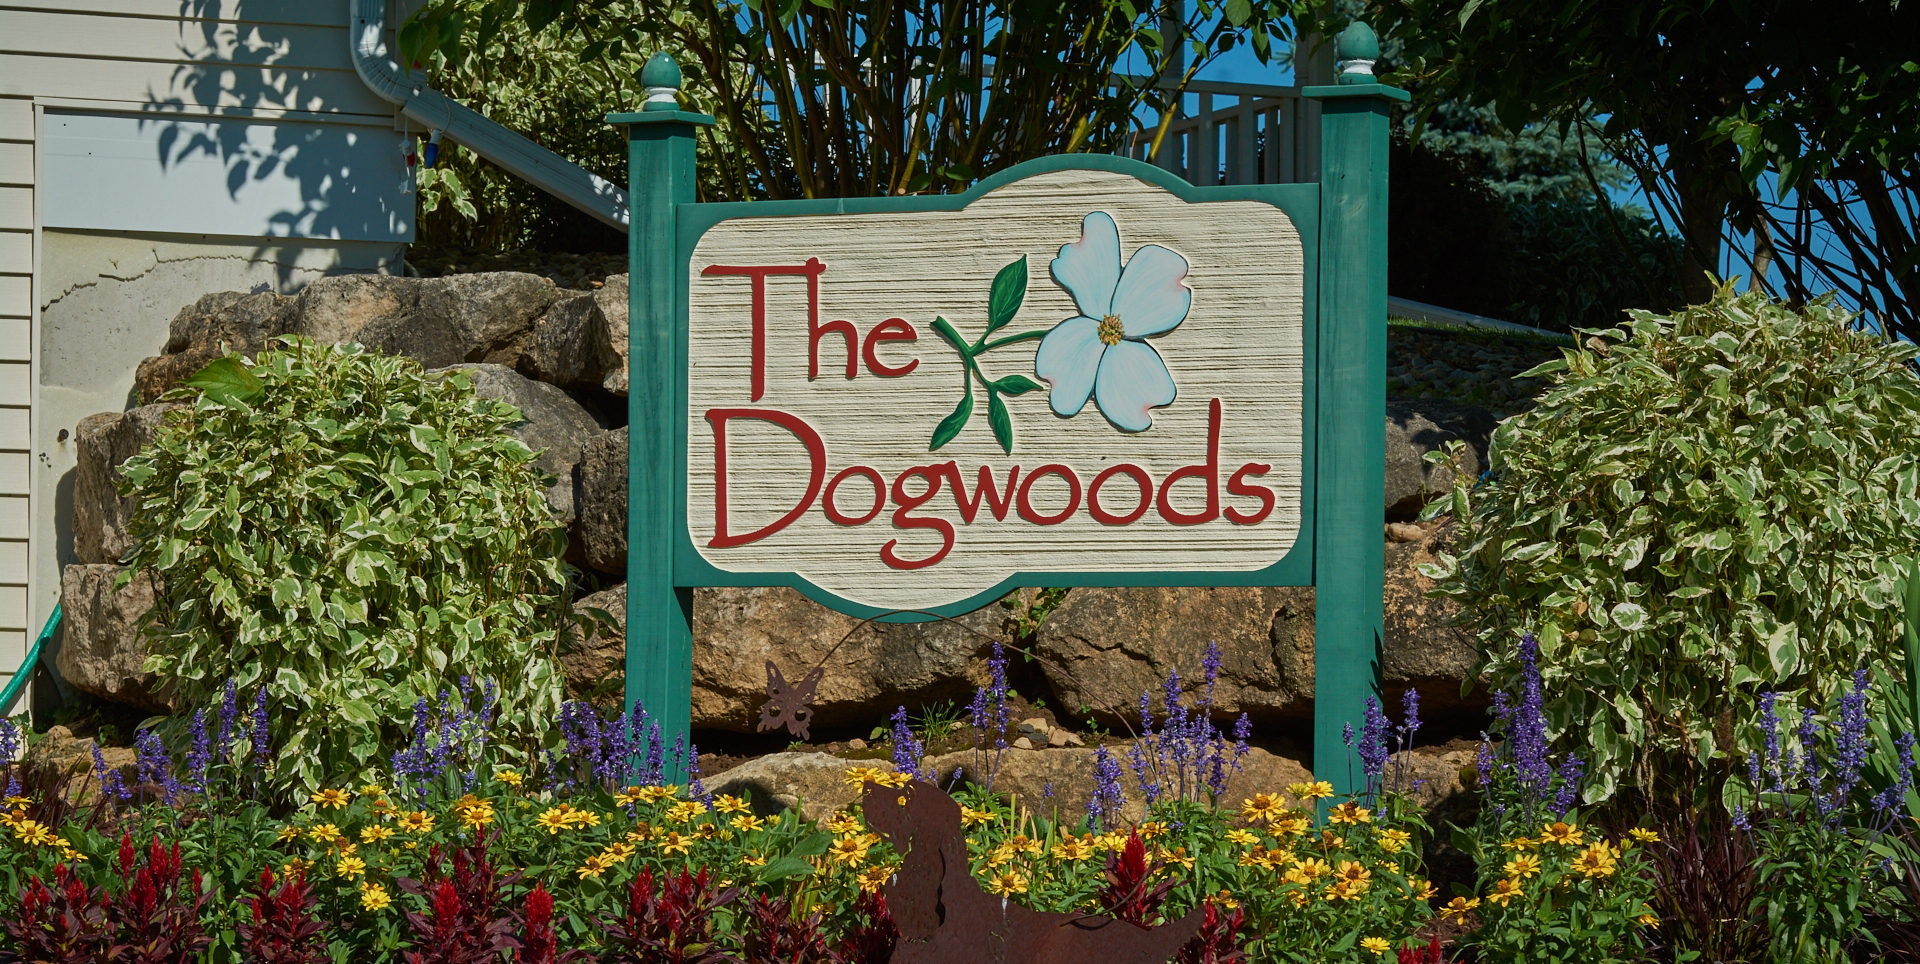 Dogwoods Logo At The Dogwoods Mount Horeb, WI